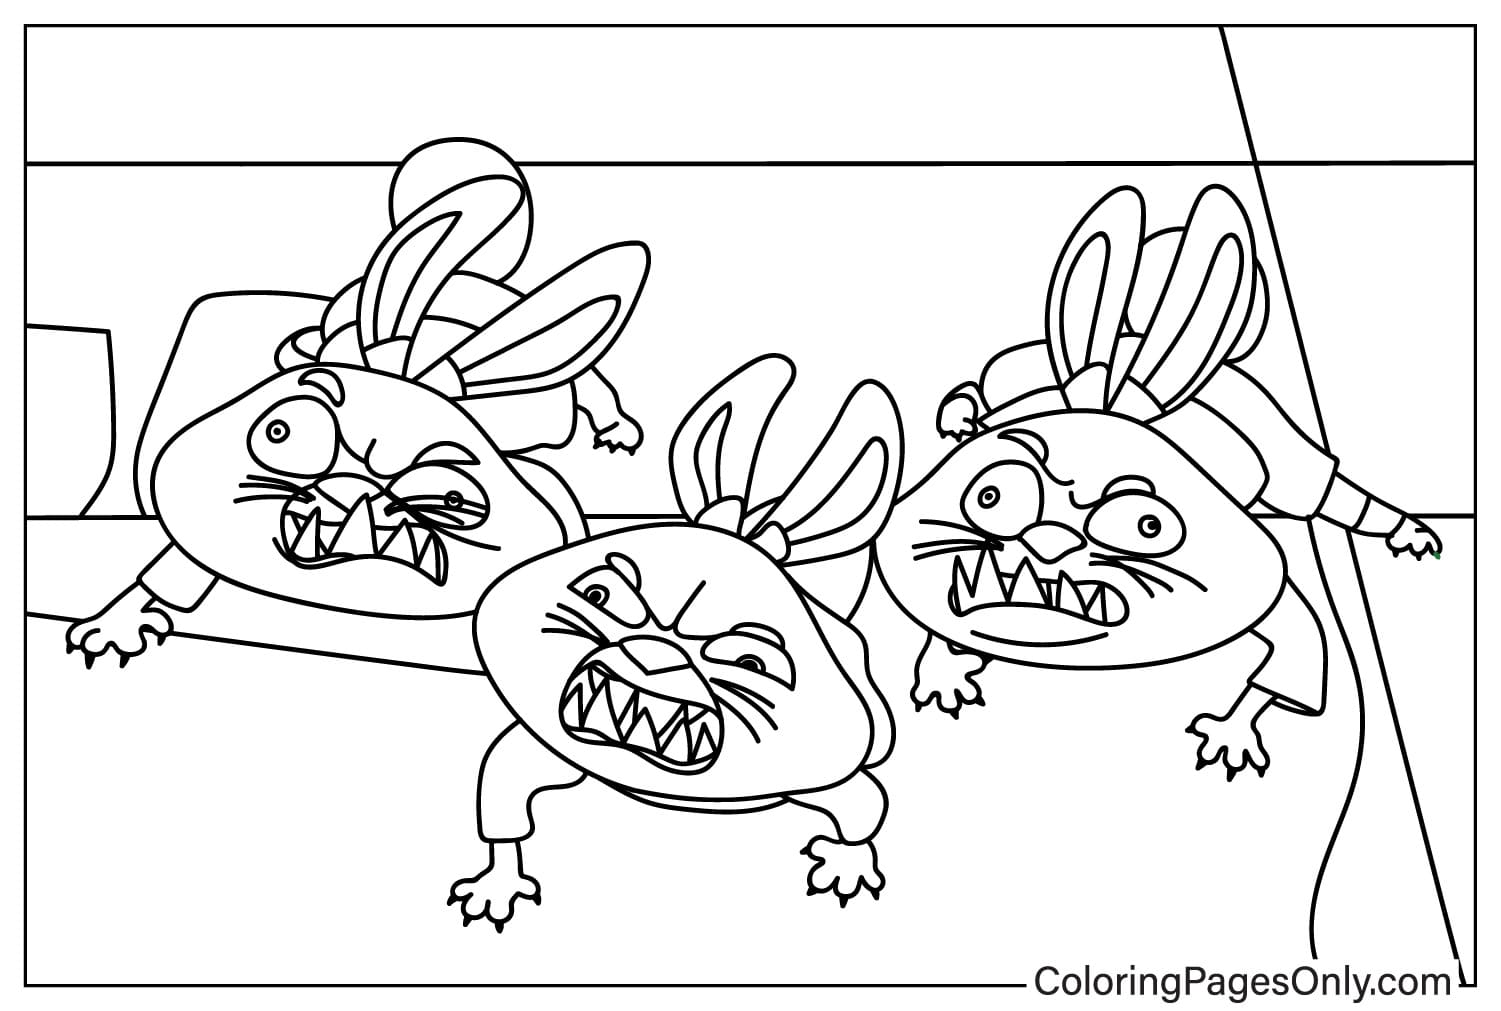 Página para colorir do Trio de Coelhinhos Rampaging do Kung Fu Panda